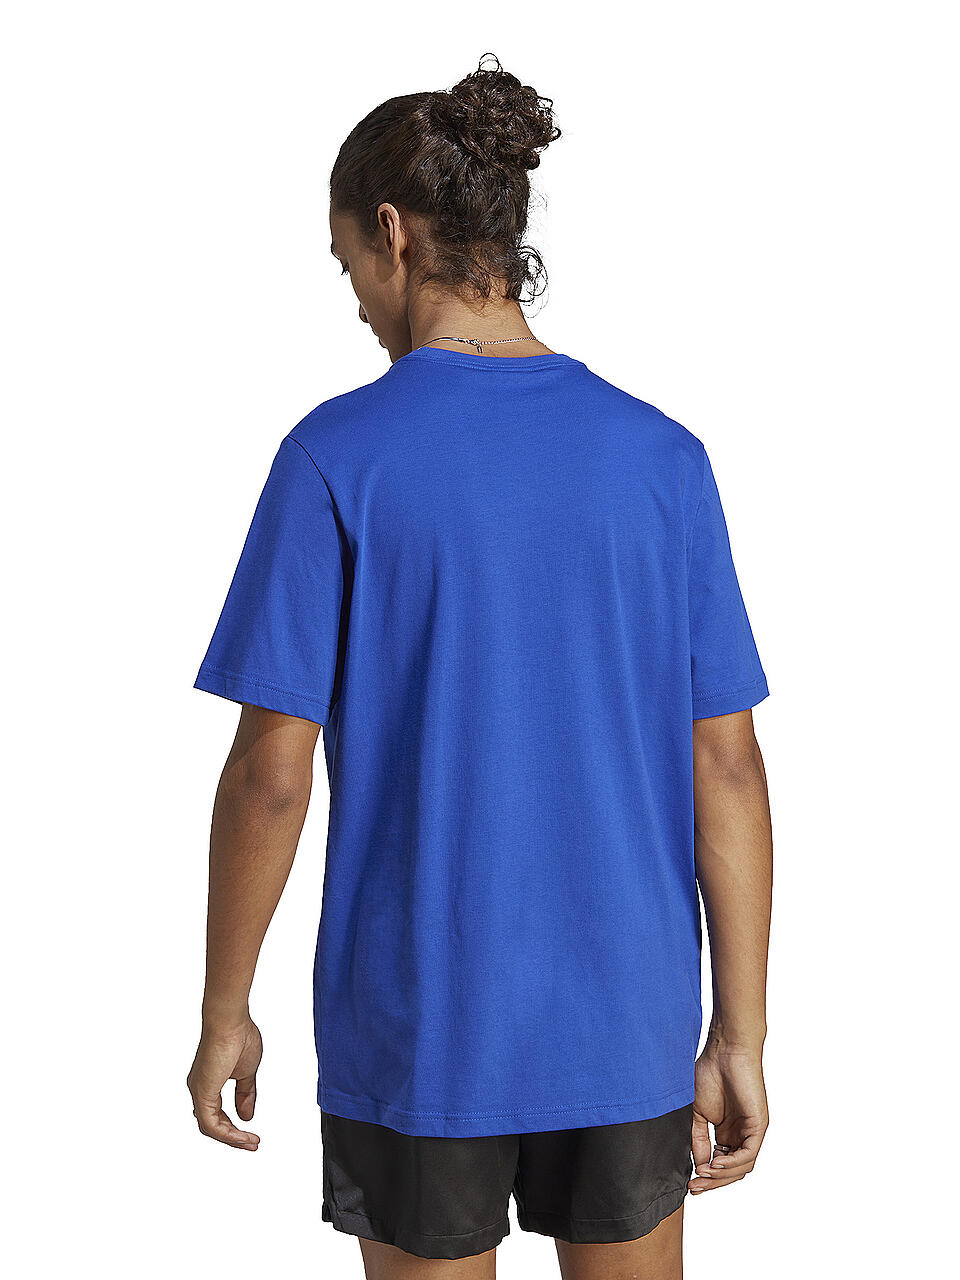 ADIDAS | Herren T-Shirt  | blau